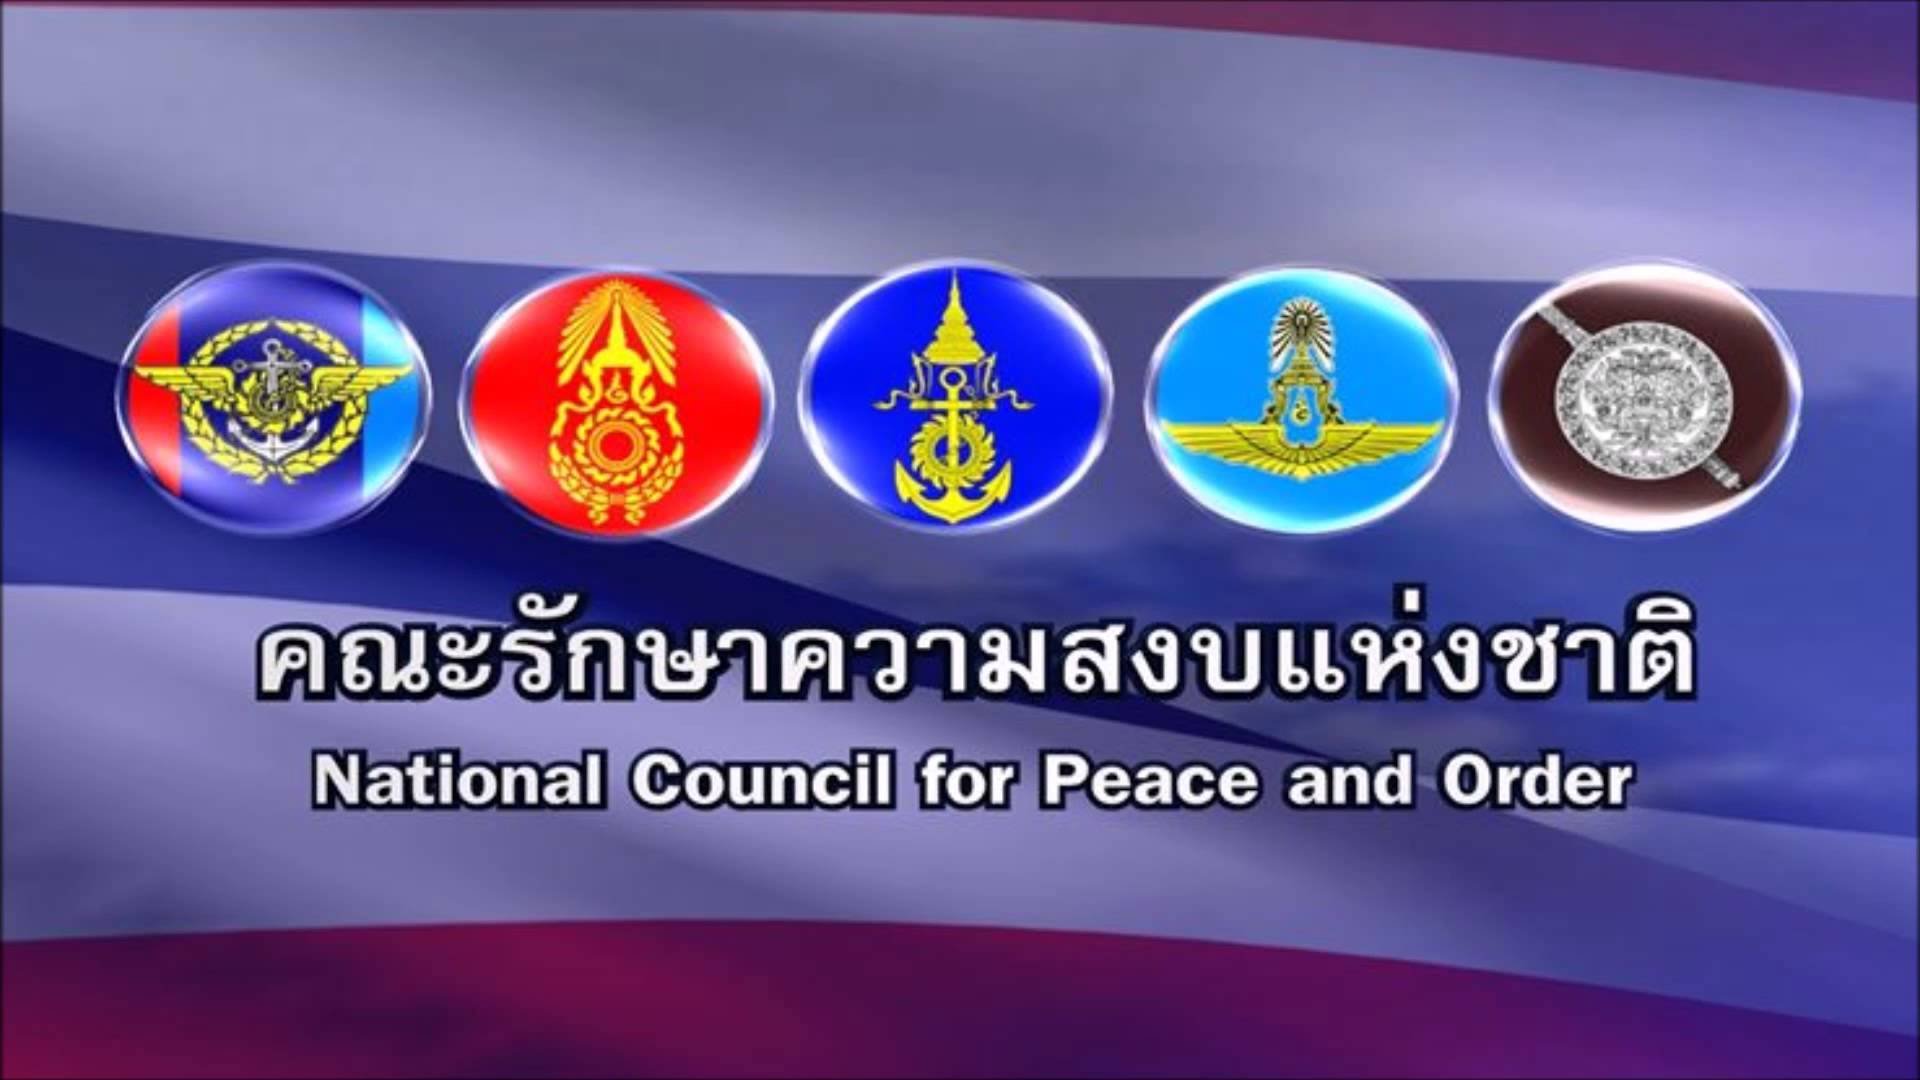 คสช. เผยแพร่เพลง “คืนความสุขให้ประเทศไทย” ขอประชาชนไว้ใจ-ศรัทธากองทัพ